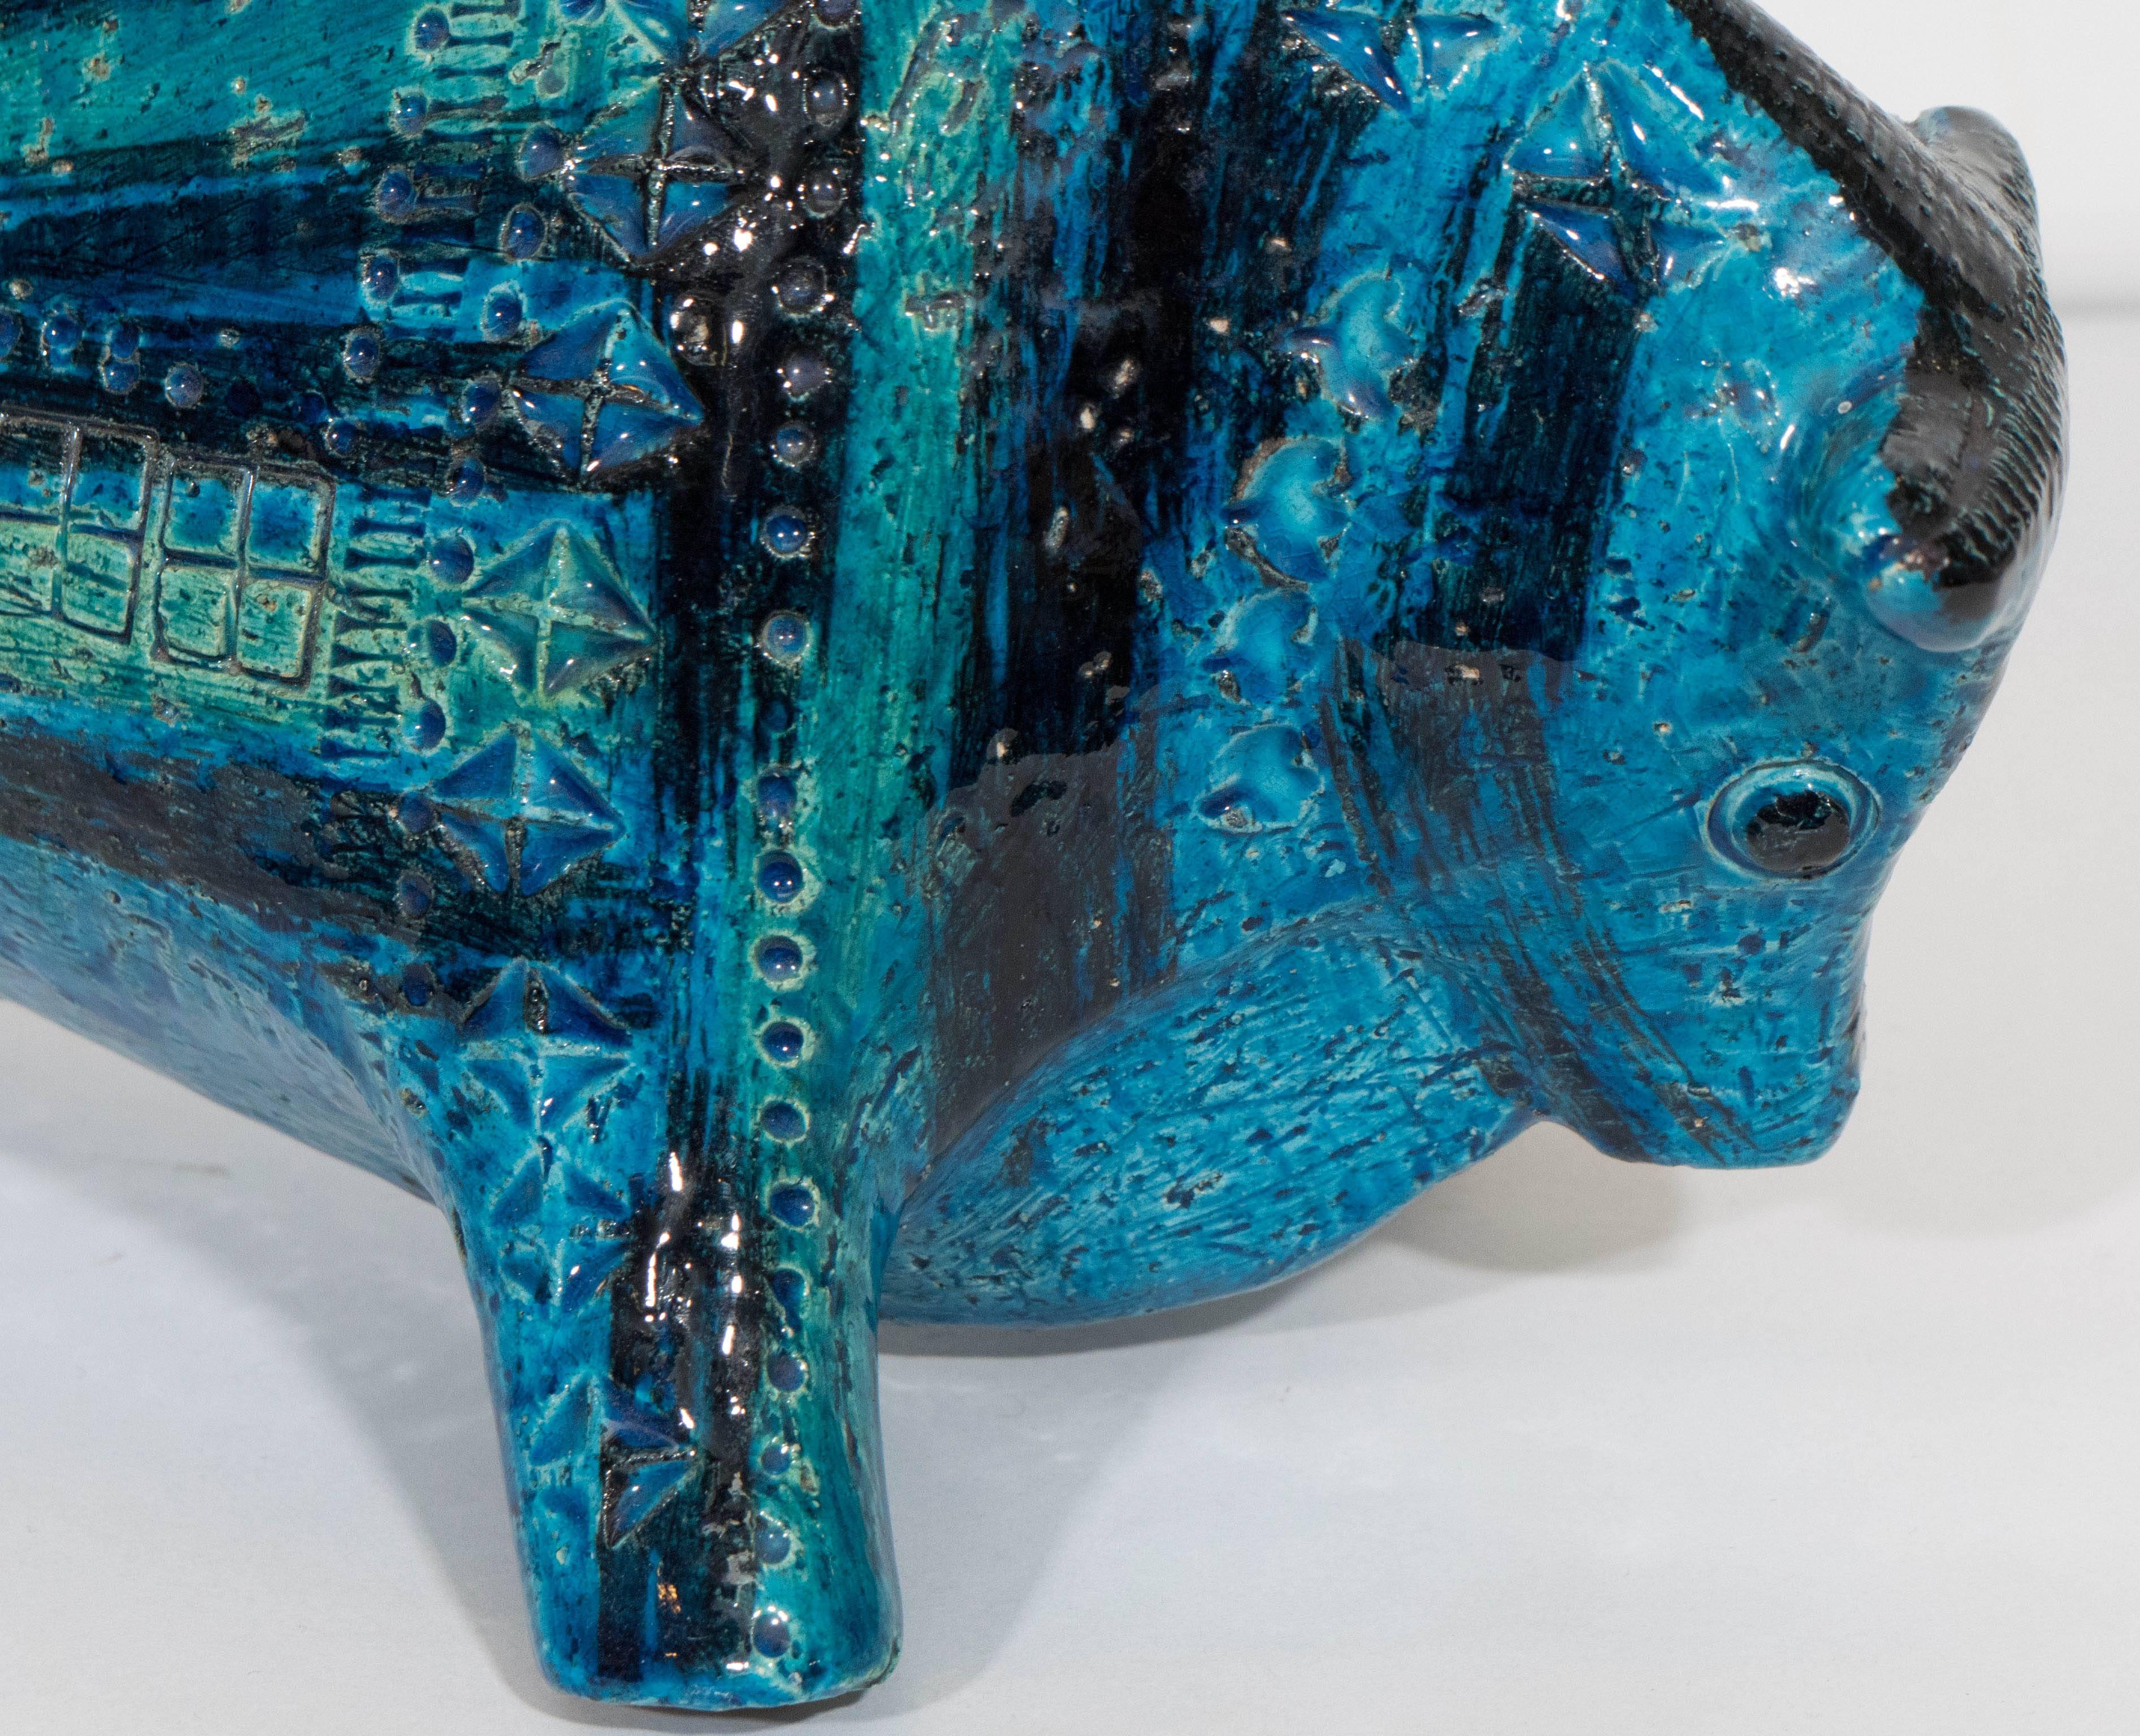 Glazed Rimini Blue Bull Sculpture by Bitossi for Raymor